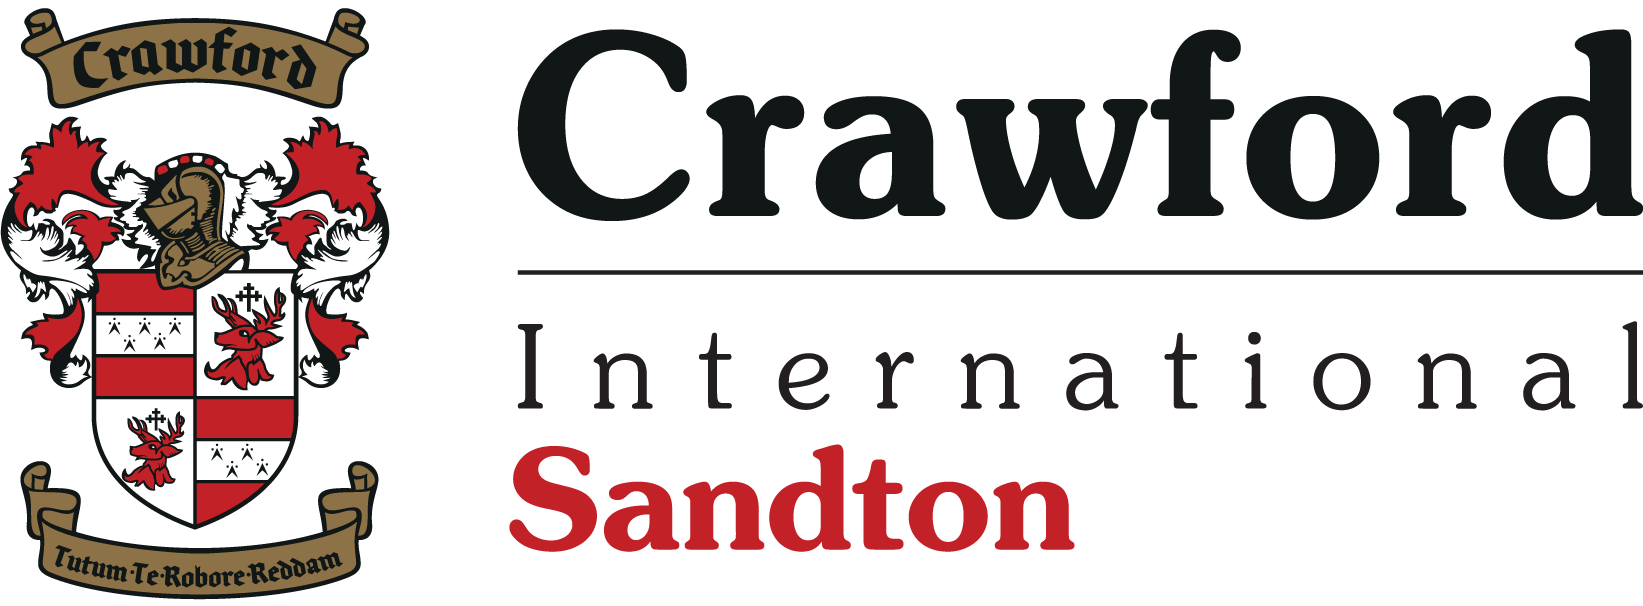 cwfdint sandton landscape | The Sandton Times | Sandton's Leading Digital News Media Outlet | Breaking News